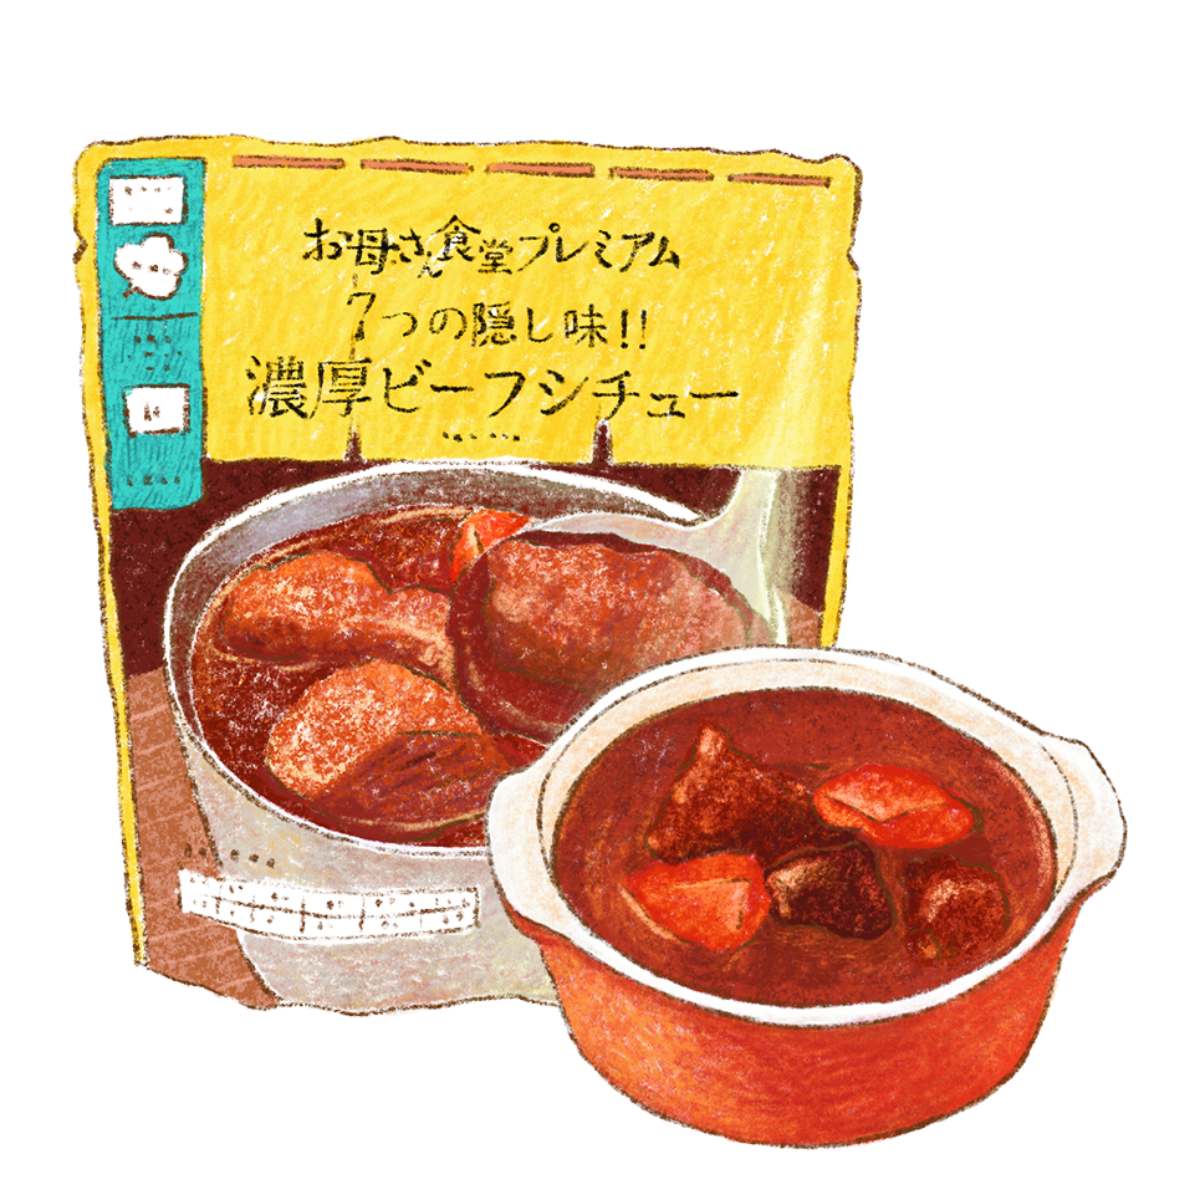 每天都要逛！日本５族群最愛「超商美食」：上班族被「它」療癒、主婦搶買湯